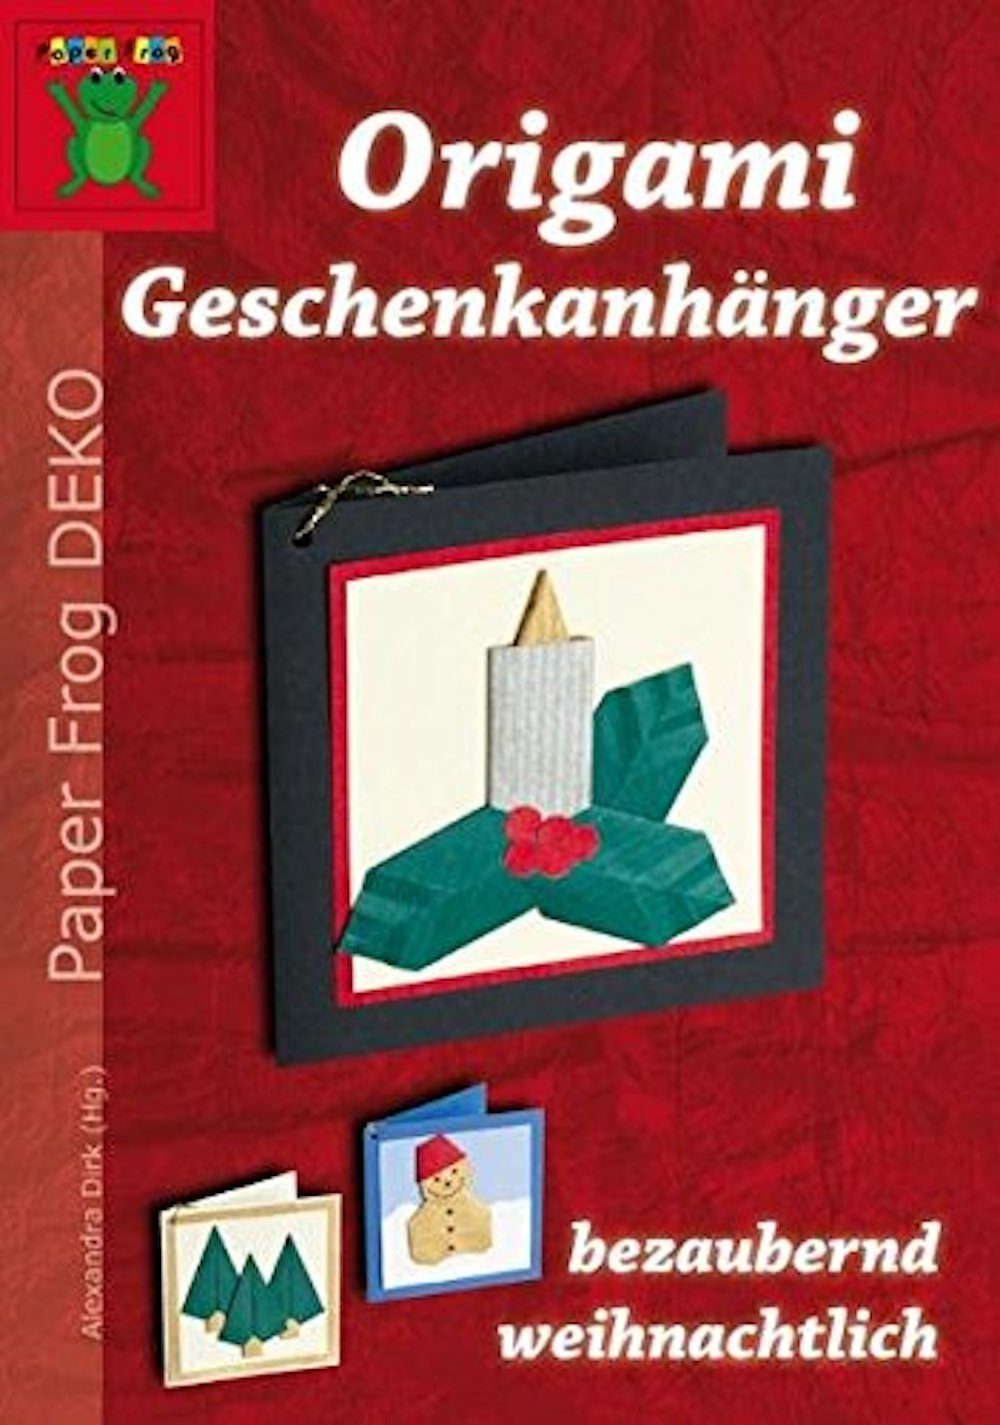 H-Erzmade Papiersterne Broschüre Origami Geschenkanhänger - bezaubernd we